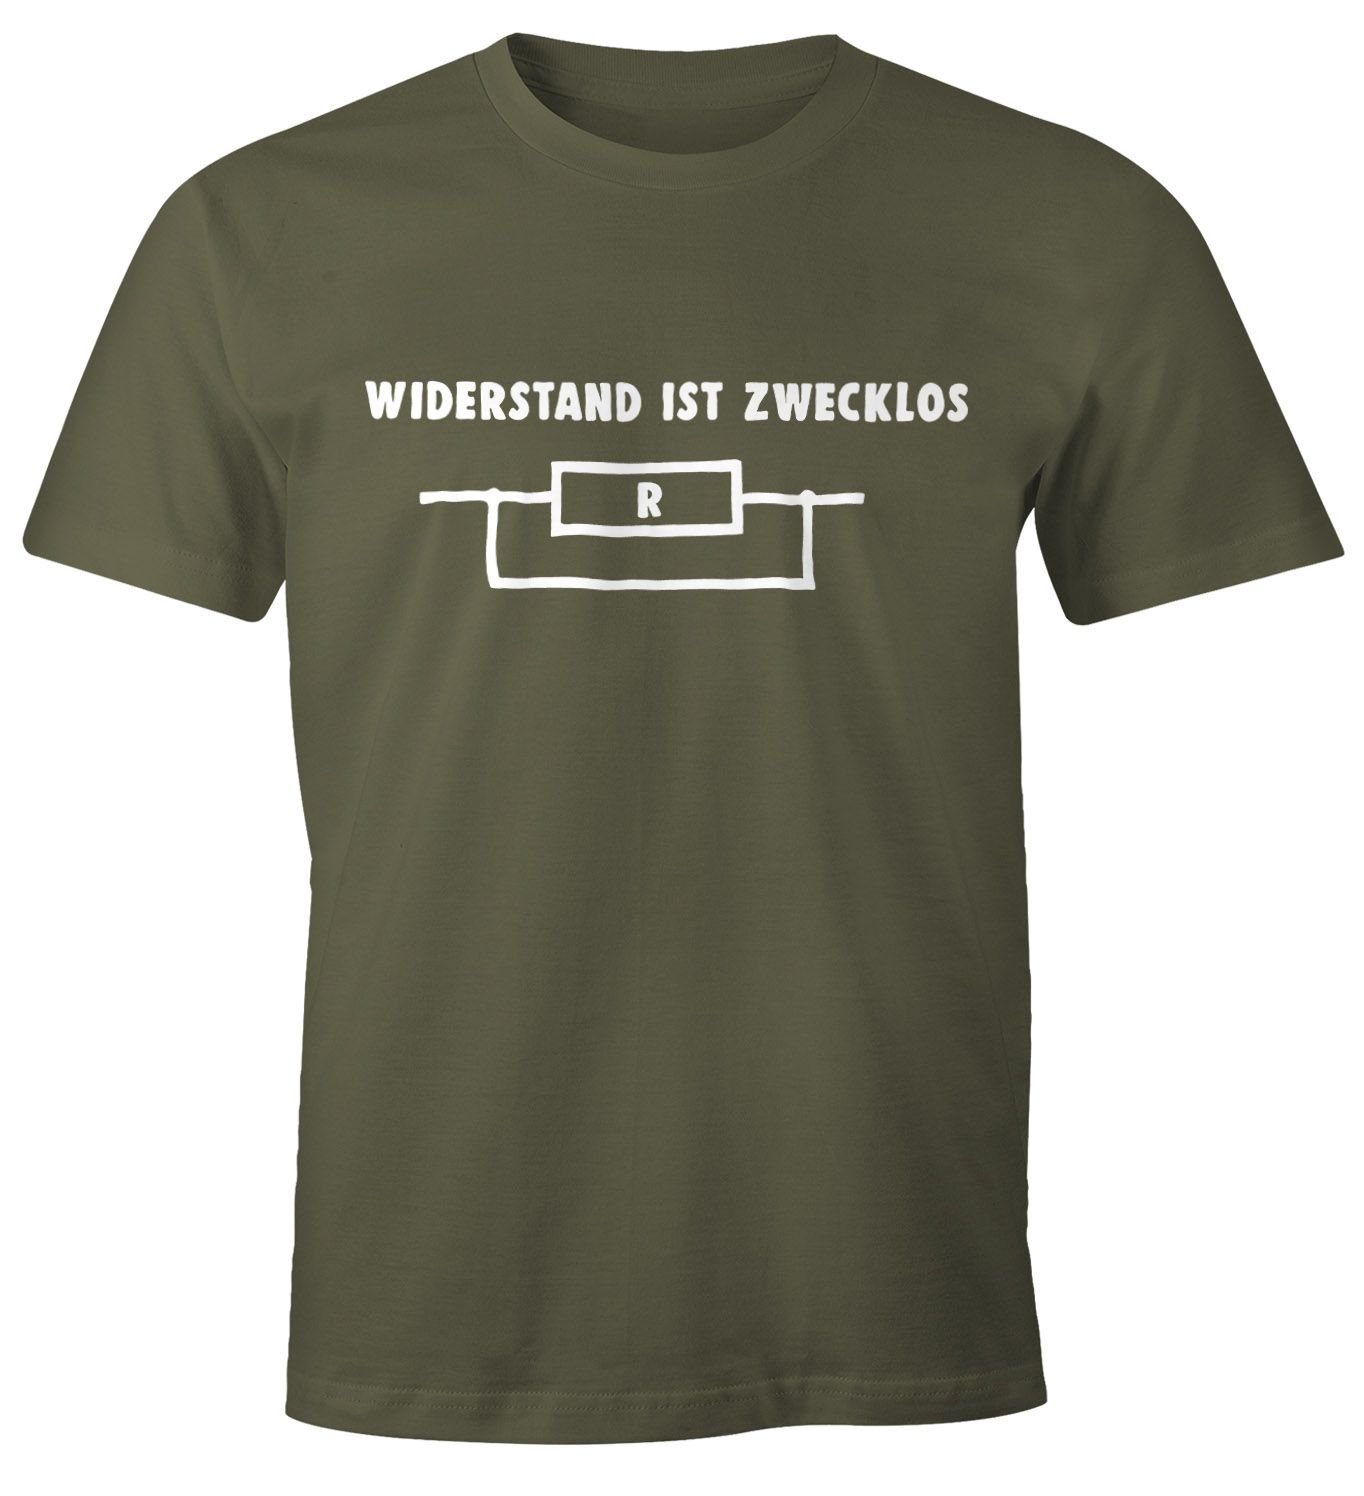 MoonWorks Print-Shirt ist Moonworks® Shirt Widerstand Herren T-Shirt zwecklos mit grün Print